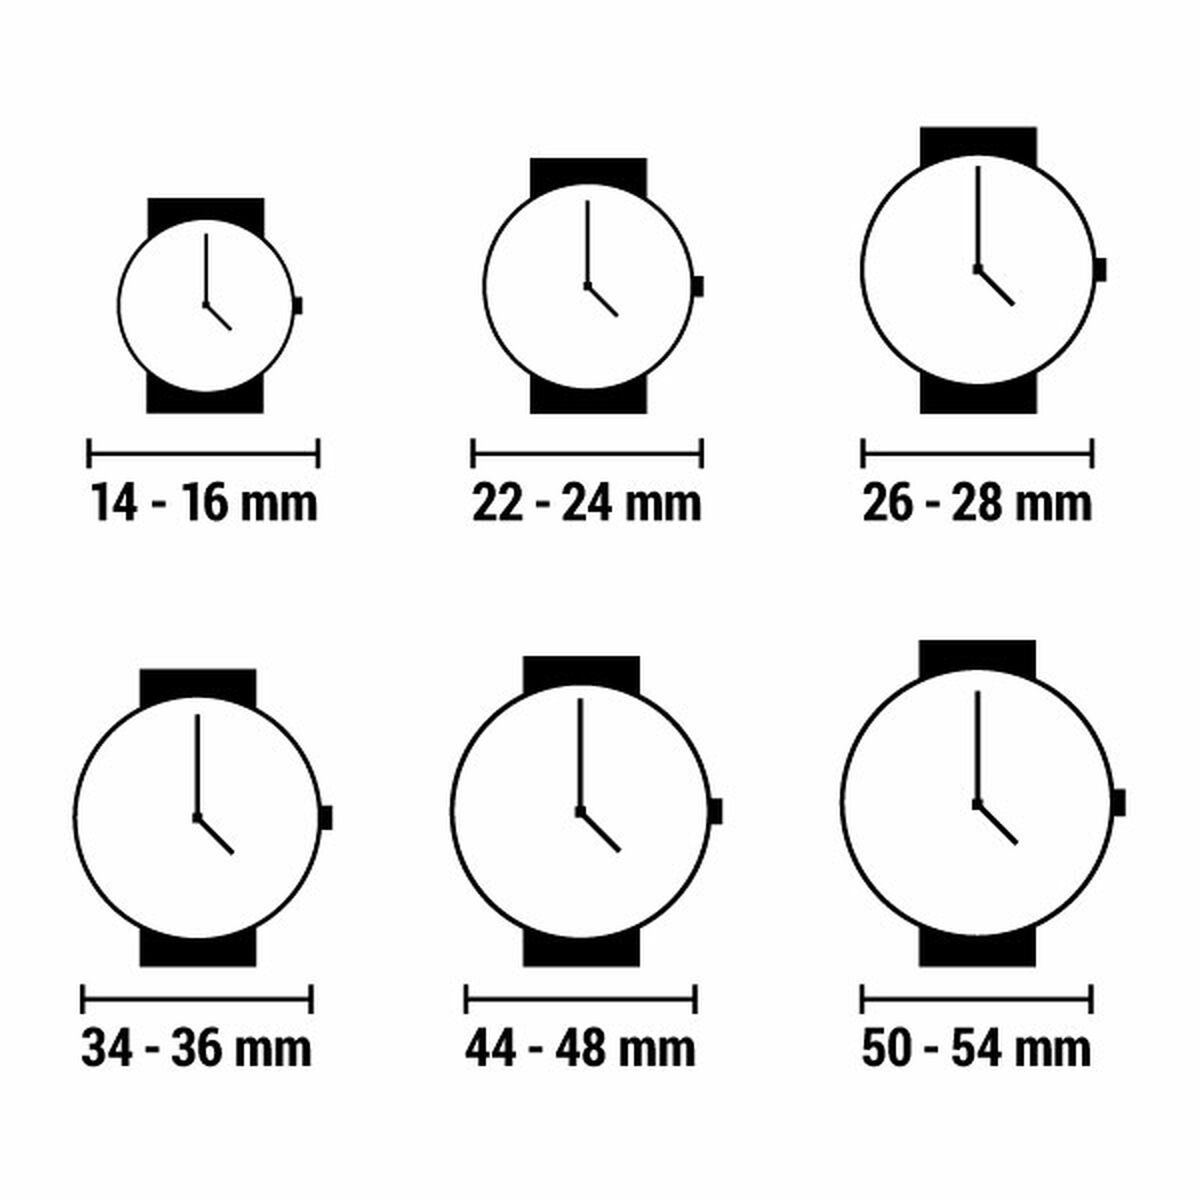 Horloge Dames Esprit ES1L214L0035